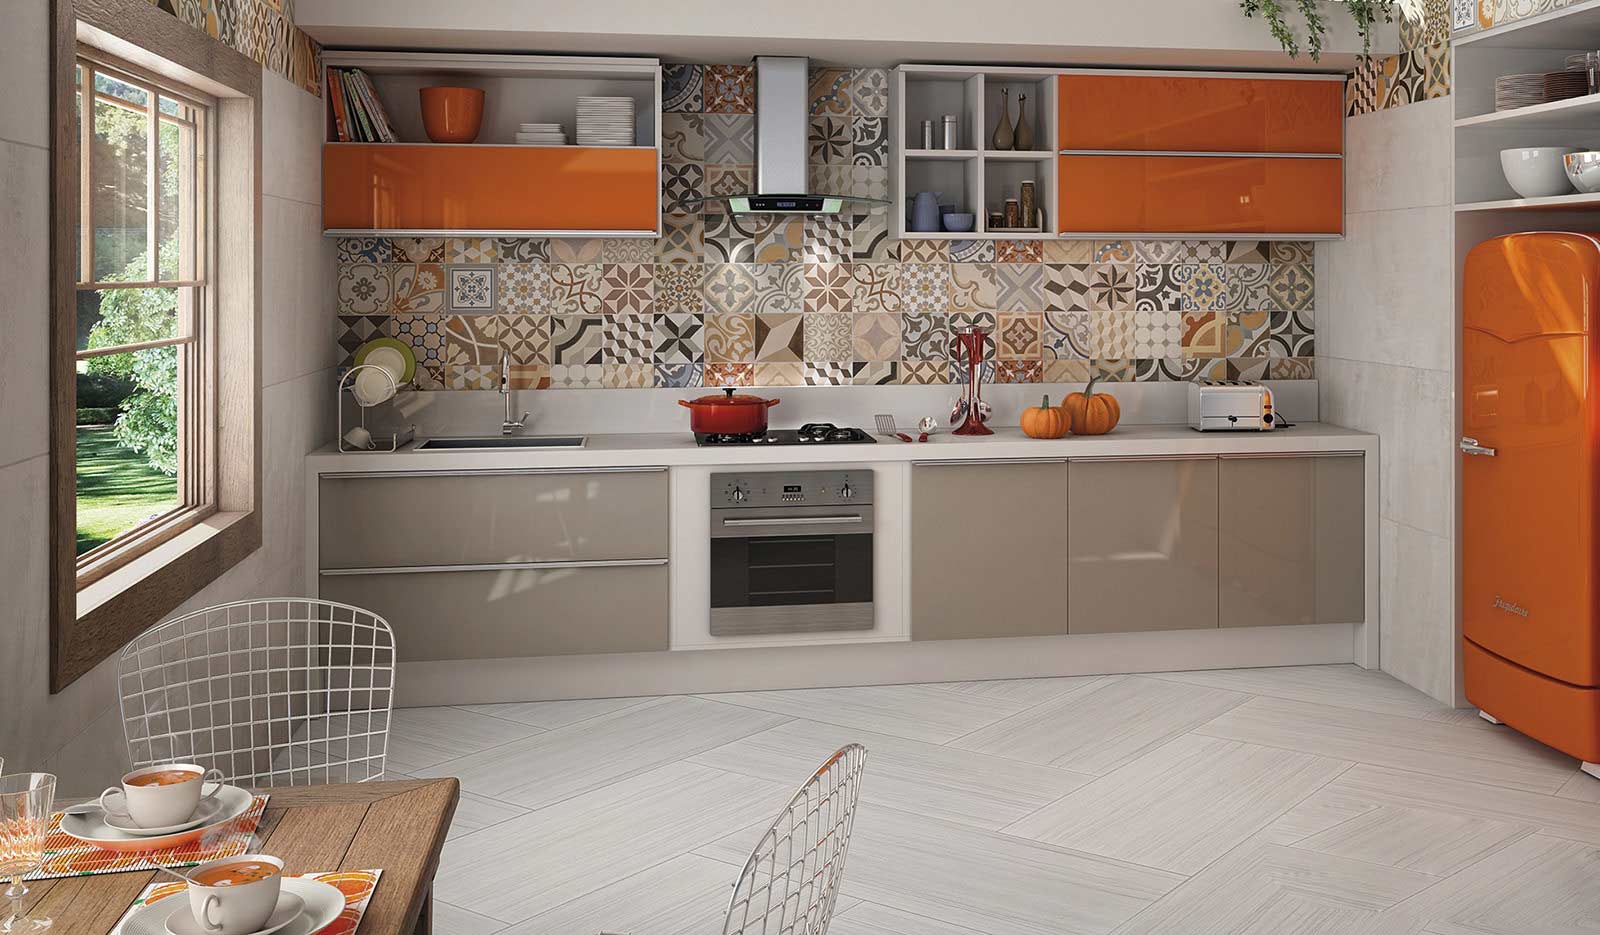 Ирина Кривцова: «Мой самый любимый материал для напольного покрытия кухонной зоны — керамогранит»